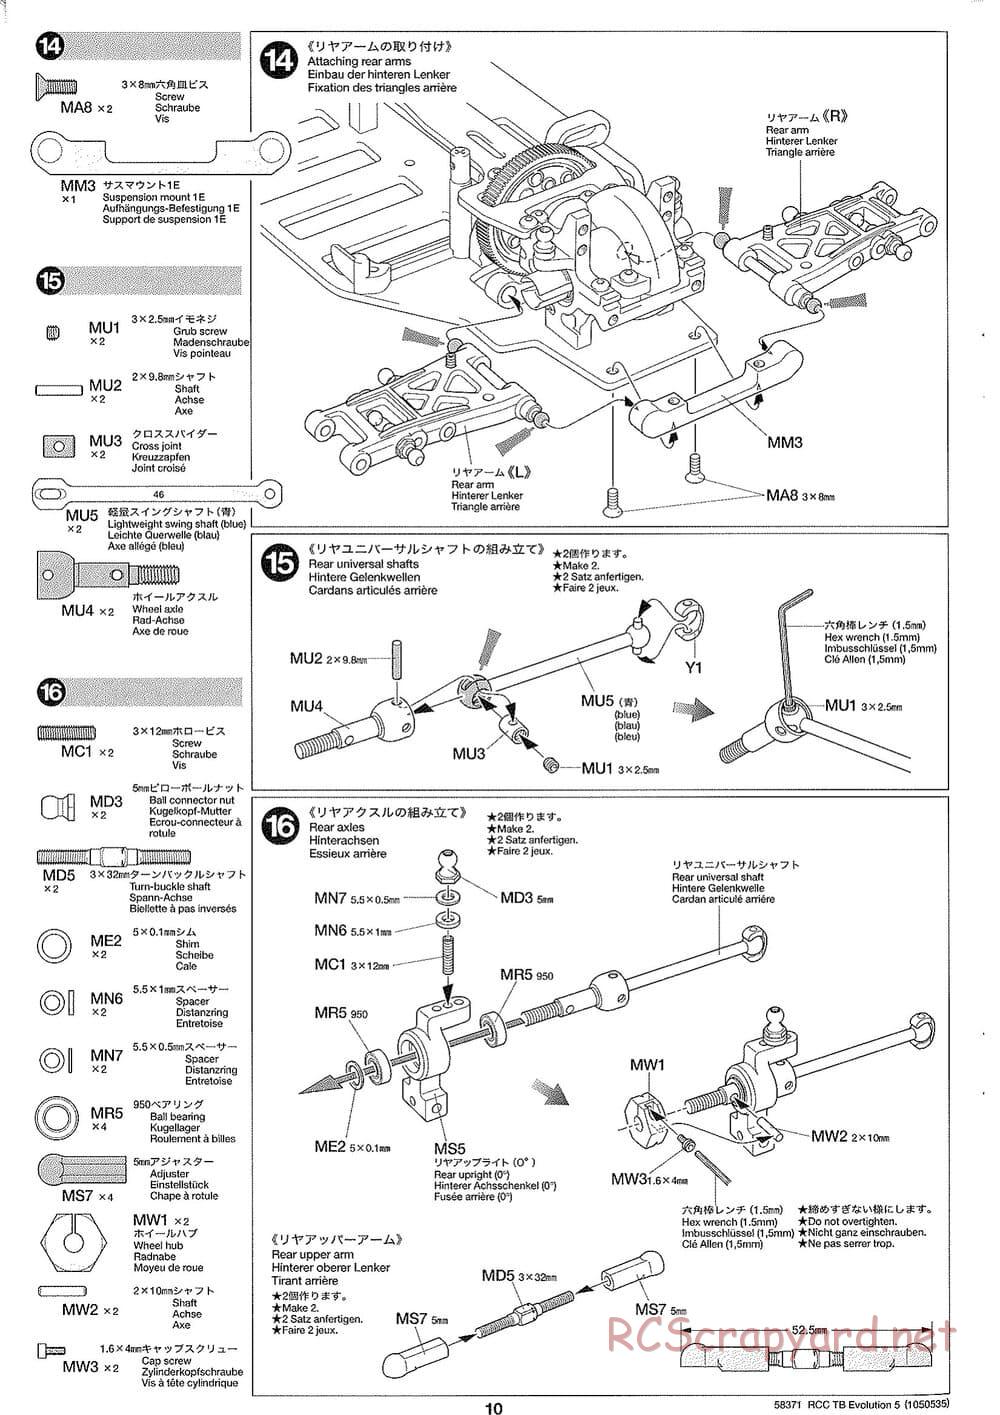 Tamiya - TB Evolution V Chassis - Manual - Page 10